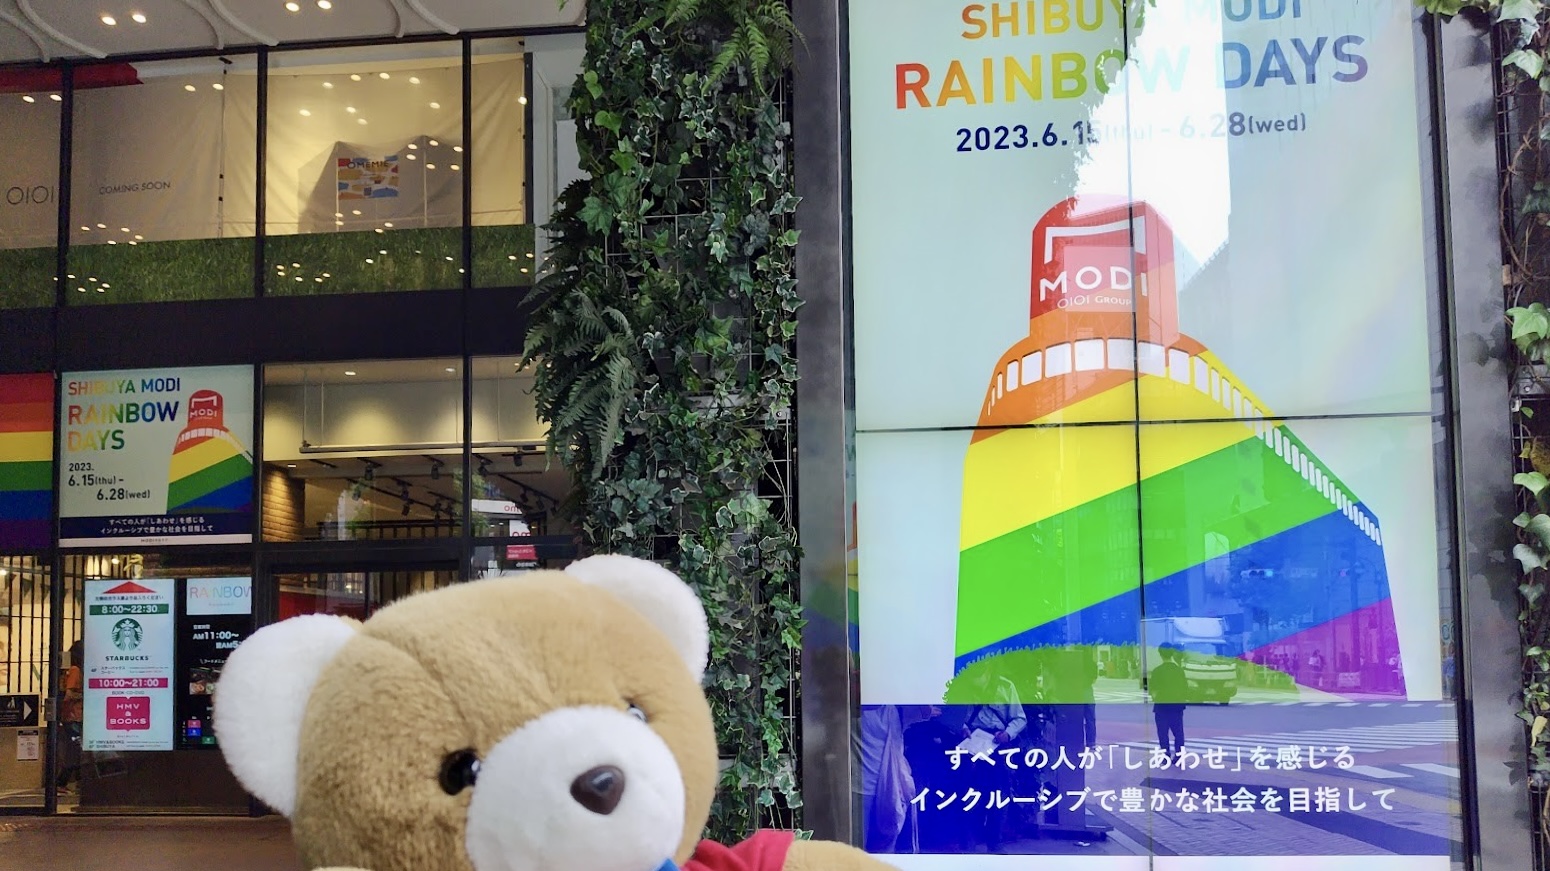 商業施設「渋谷MODI」の前でくまが手を上げてポーズをとっている。 MODIには、大きな電光掲示版が複数設置されていて、レインボーカラーになっていたり、「RAINBOW DAYS　すべての人が「しあわせ」を感じるインクルーシブで豊かな社会を目指して」というメッセージが表示されている。